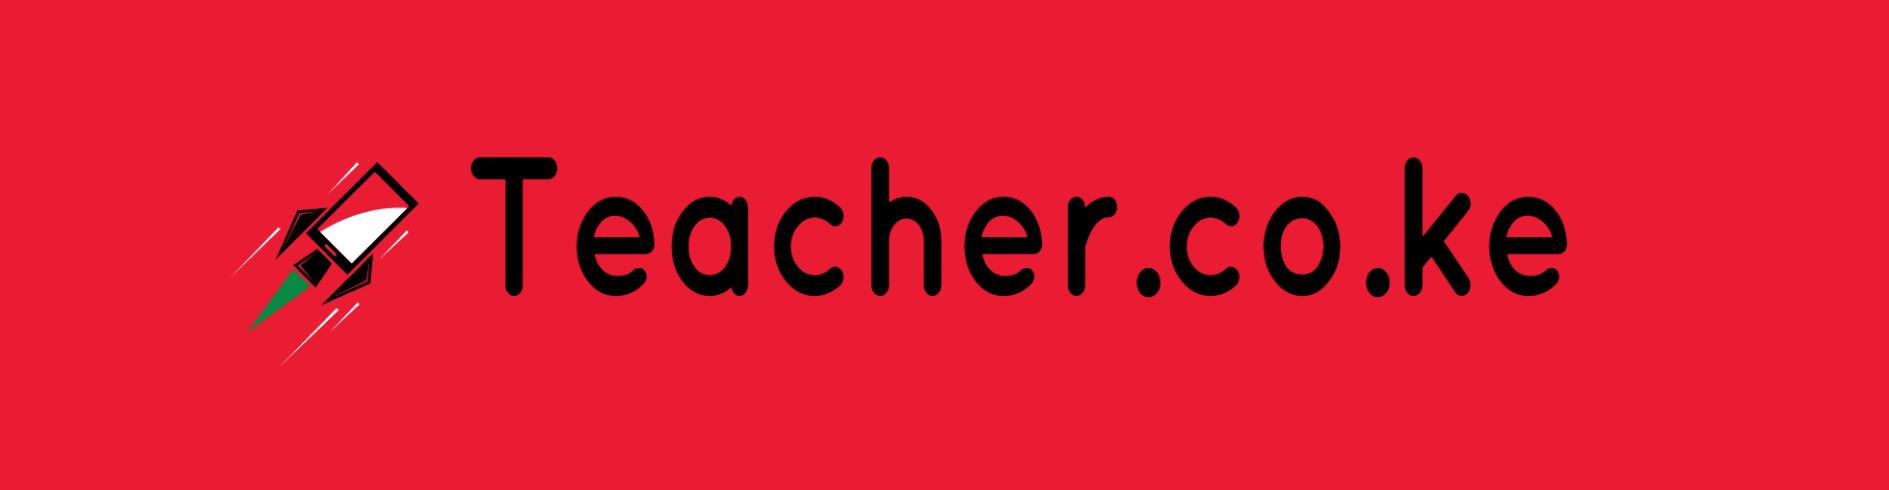 Teacher.co.ke